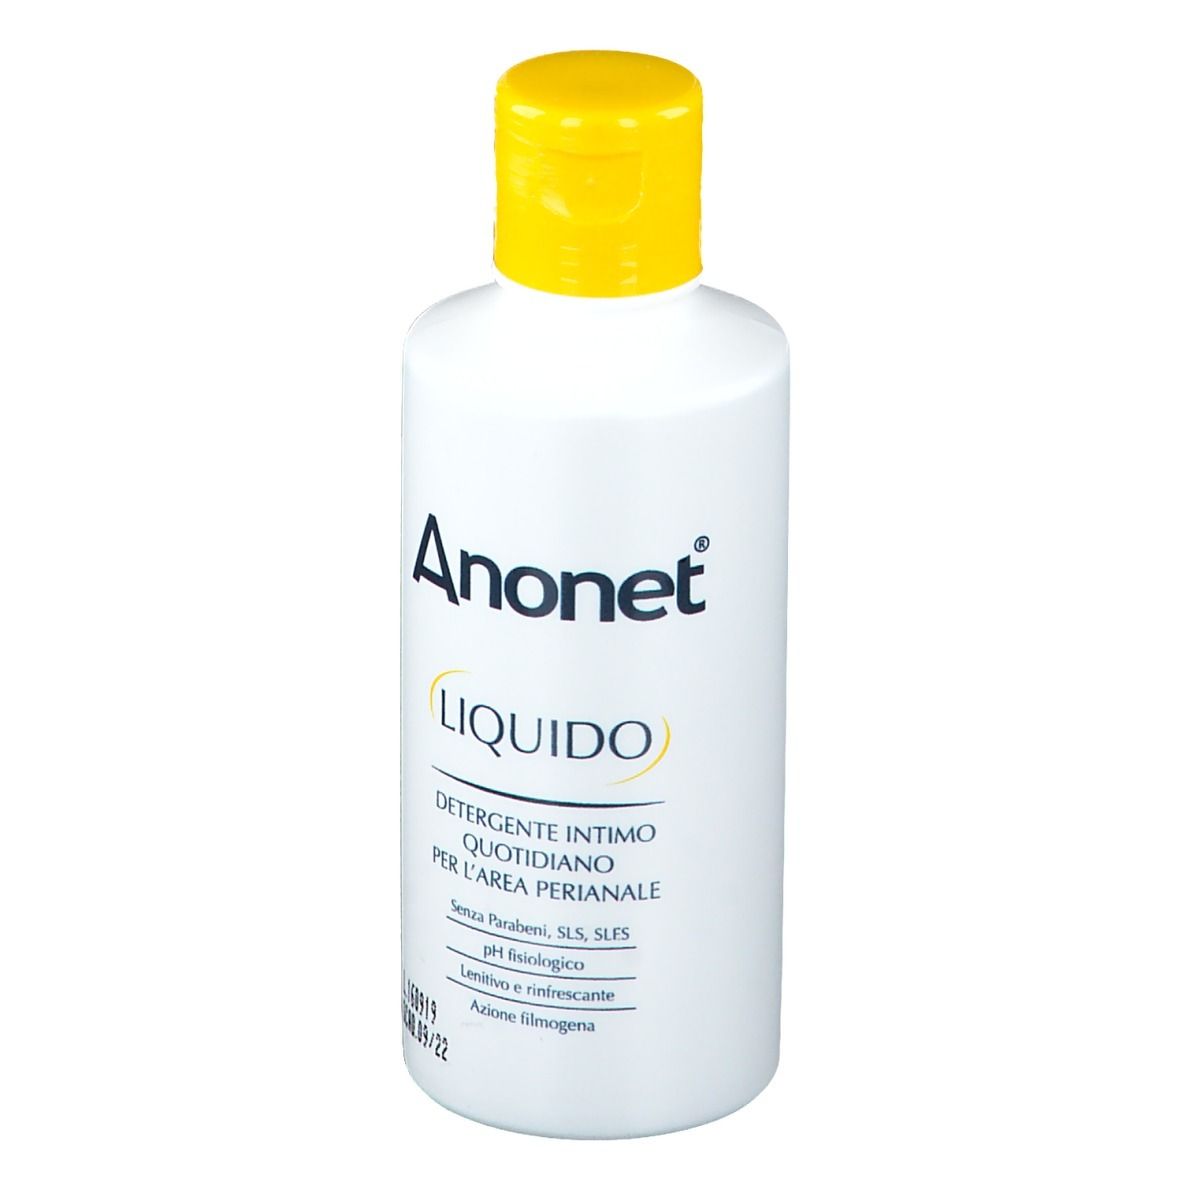 Anonet® Liquido